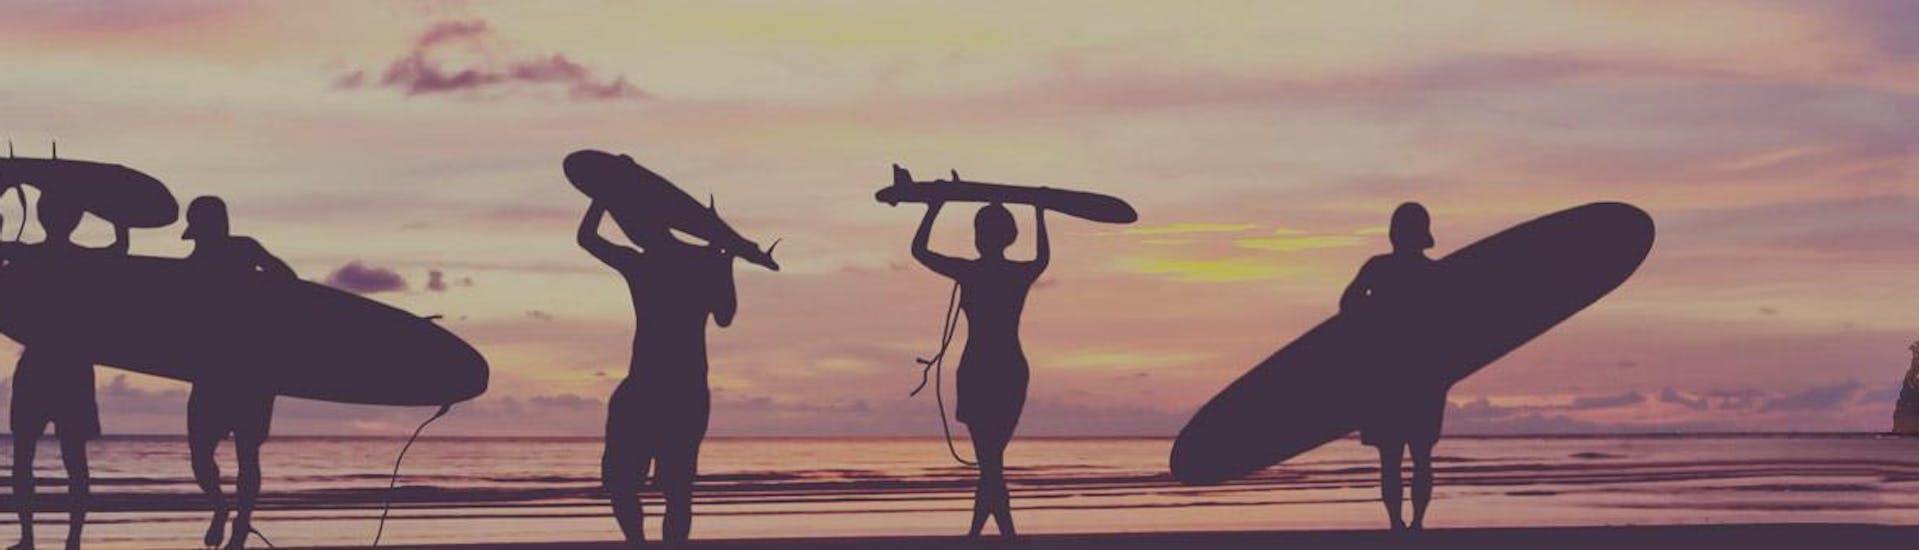 Des surfeurs marchent sur la plage au coucher du soleil avec leur planche de surf sur la tête ou sous le bras à la fin de leur cours de surf sur la plage d'Hendaye pendant la basse saison avec l'École de surf Hendaia.